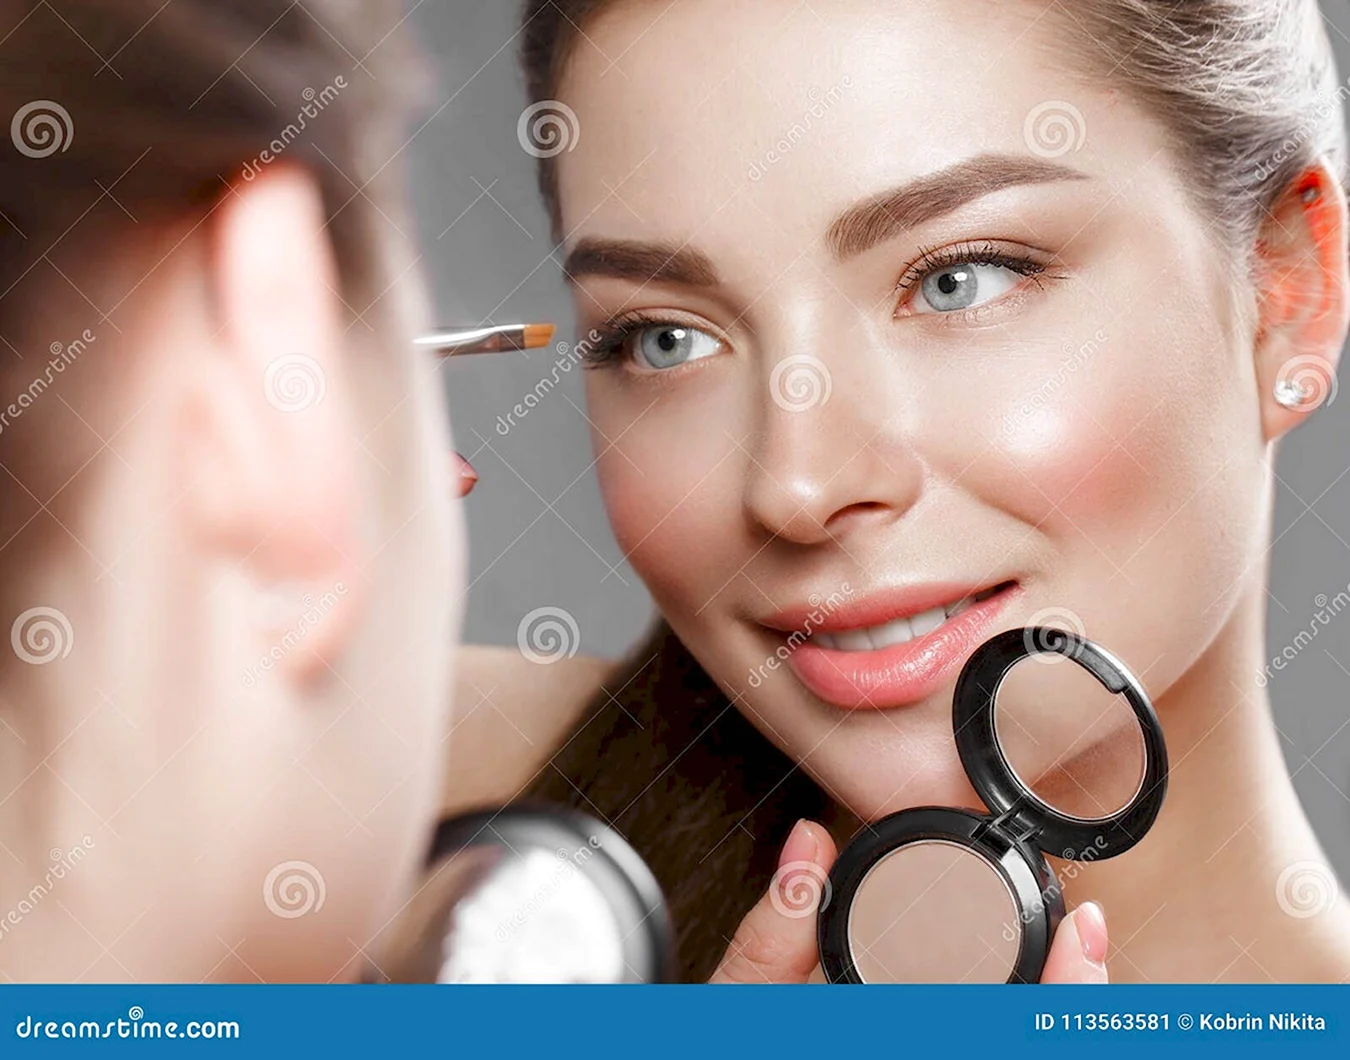 Самые красивые девушки как сделать макияж в зеркале